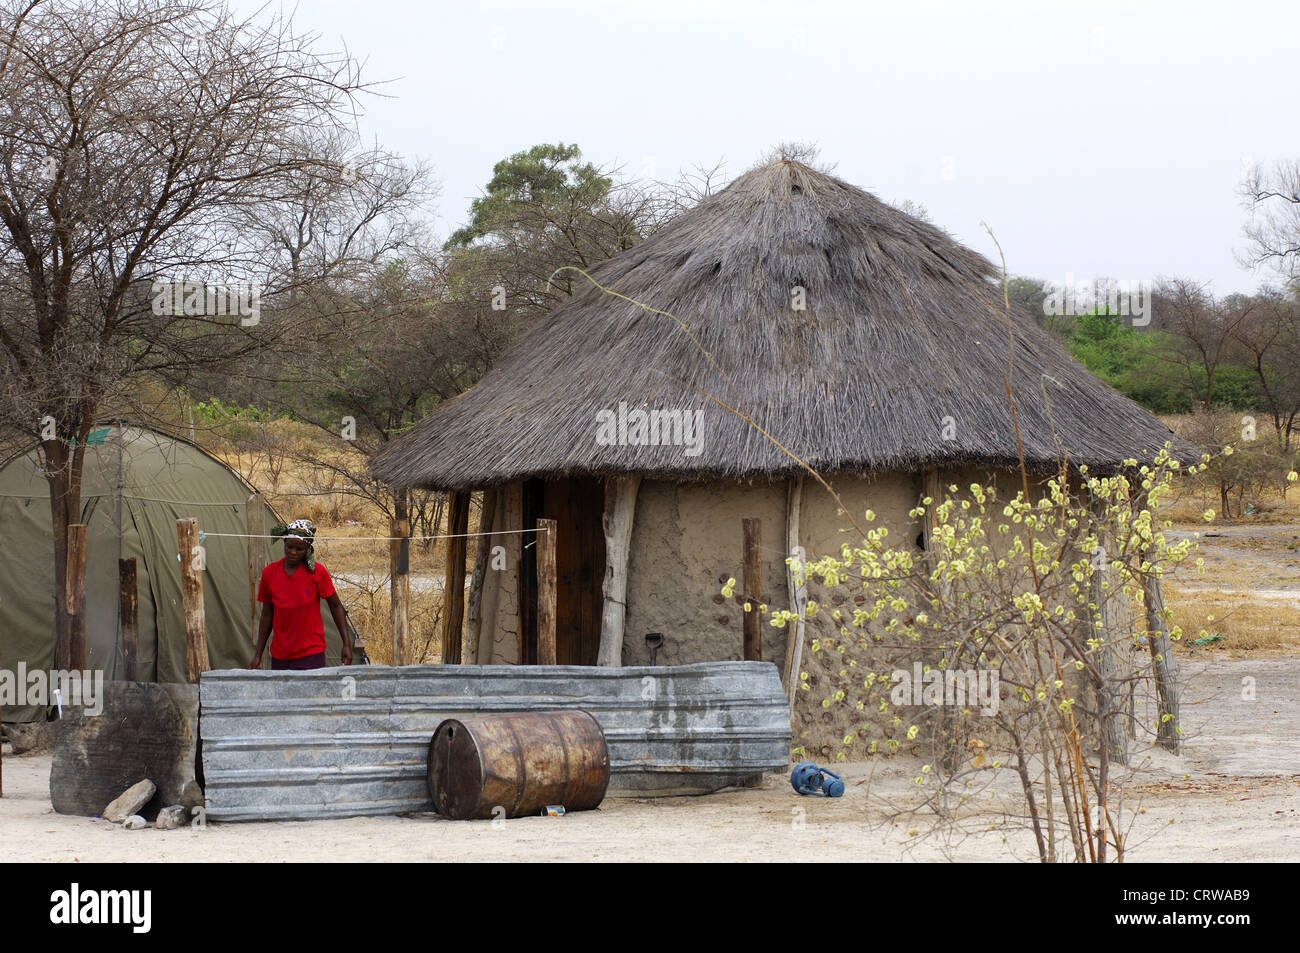 Typical African round hut, Botswana Stock Photo